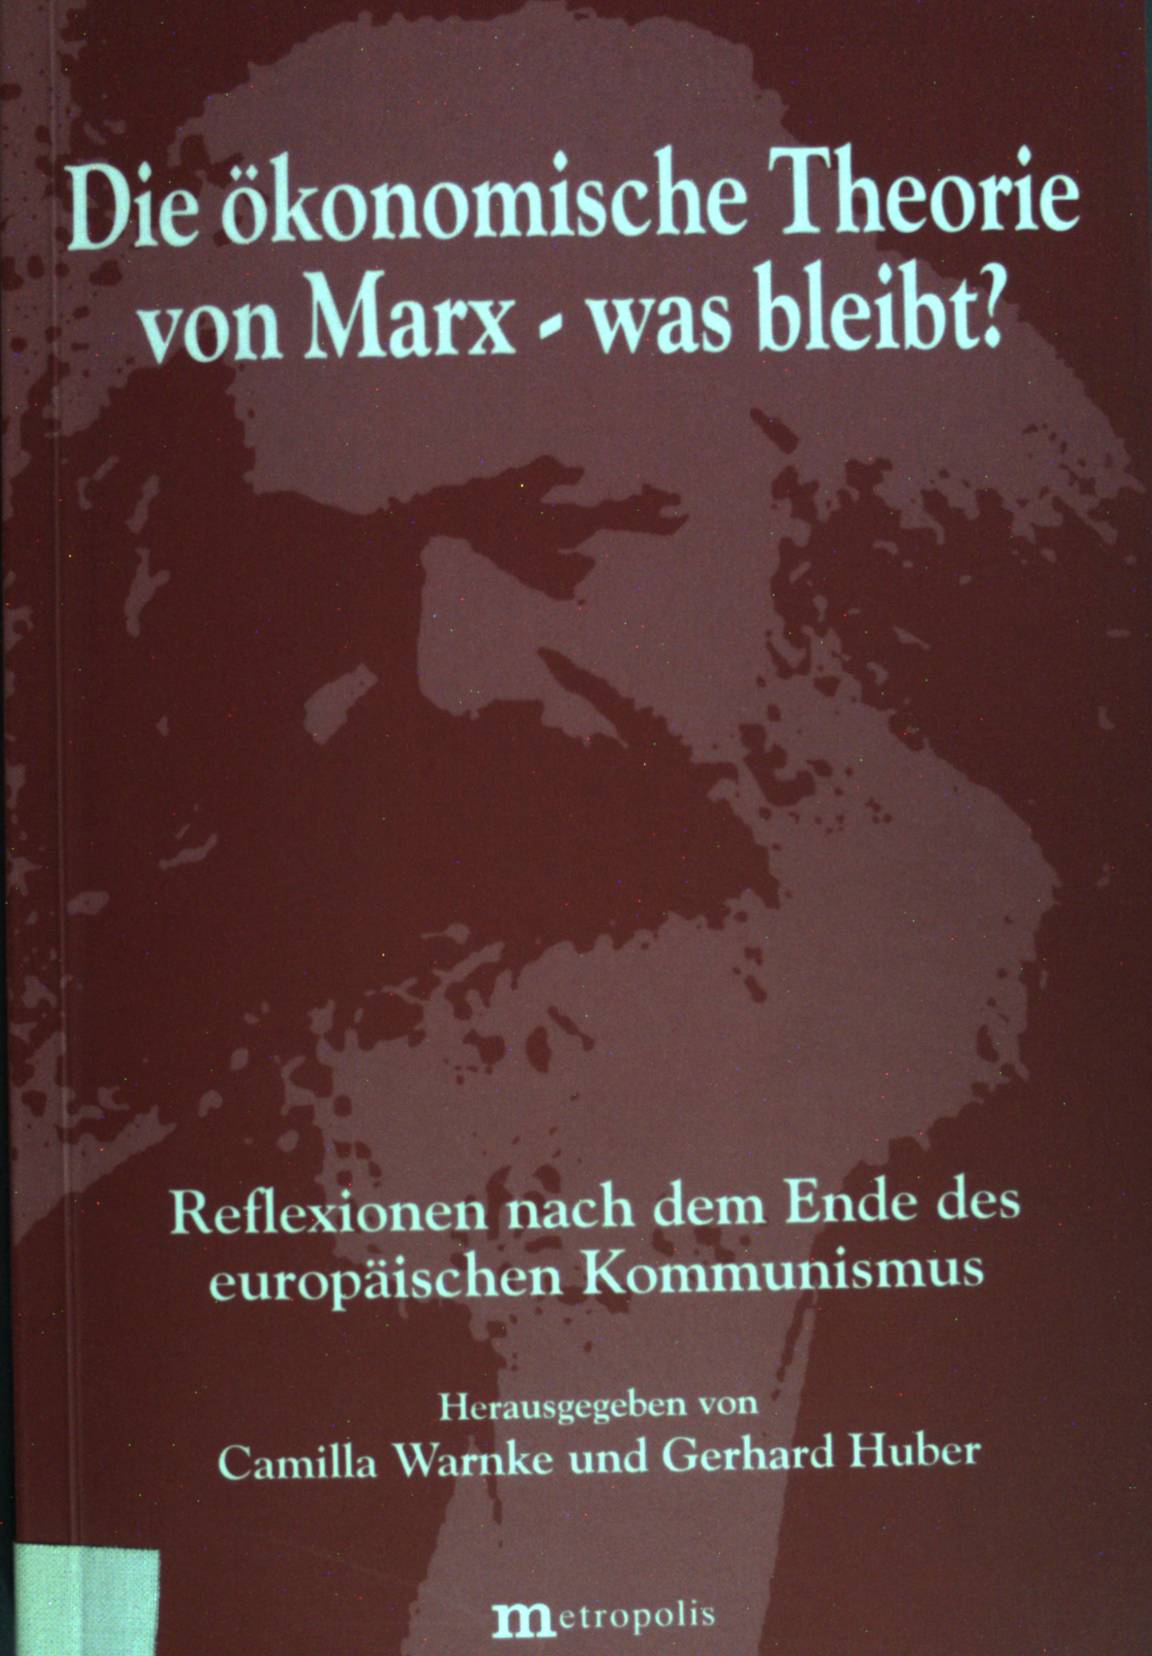 Die ökonomische Theorie von Marx - was bleibt? : Reflexionen nach dem Ende des europäischen Kommunismus. hrsg. von Camilla Warnke und Gerhard Huber - Warnke, Camilla